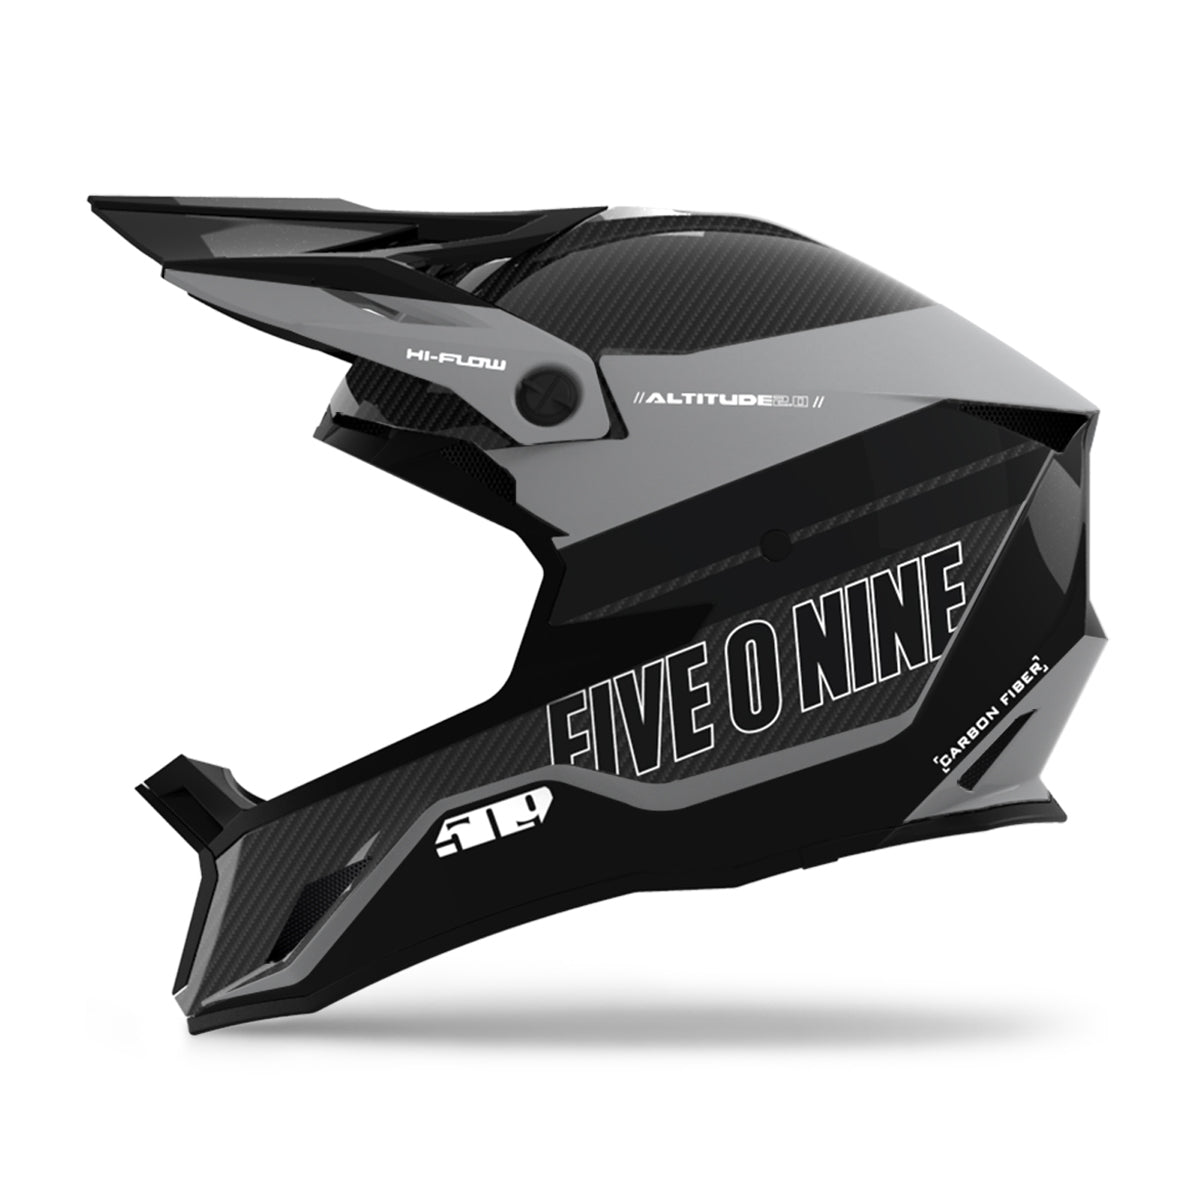 Altitude 2.0 Offroad Carbon Fiber Pro Helmet